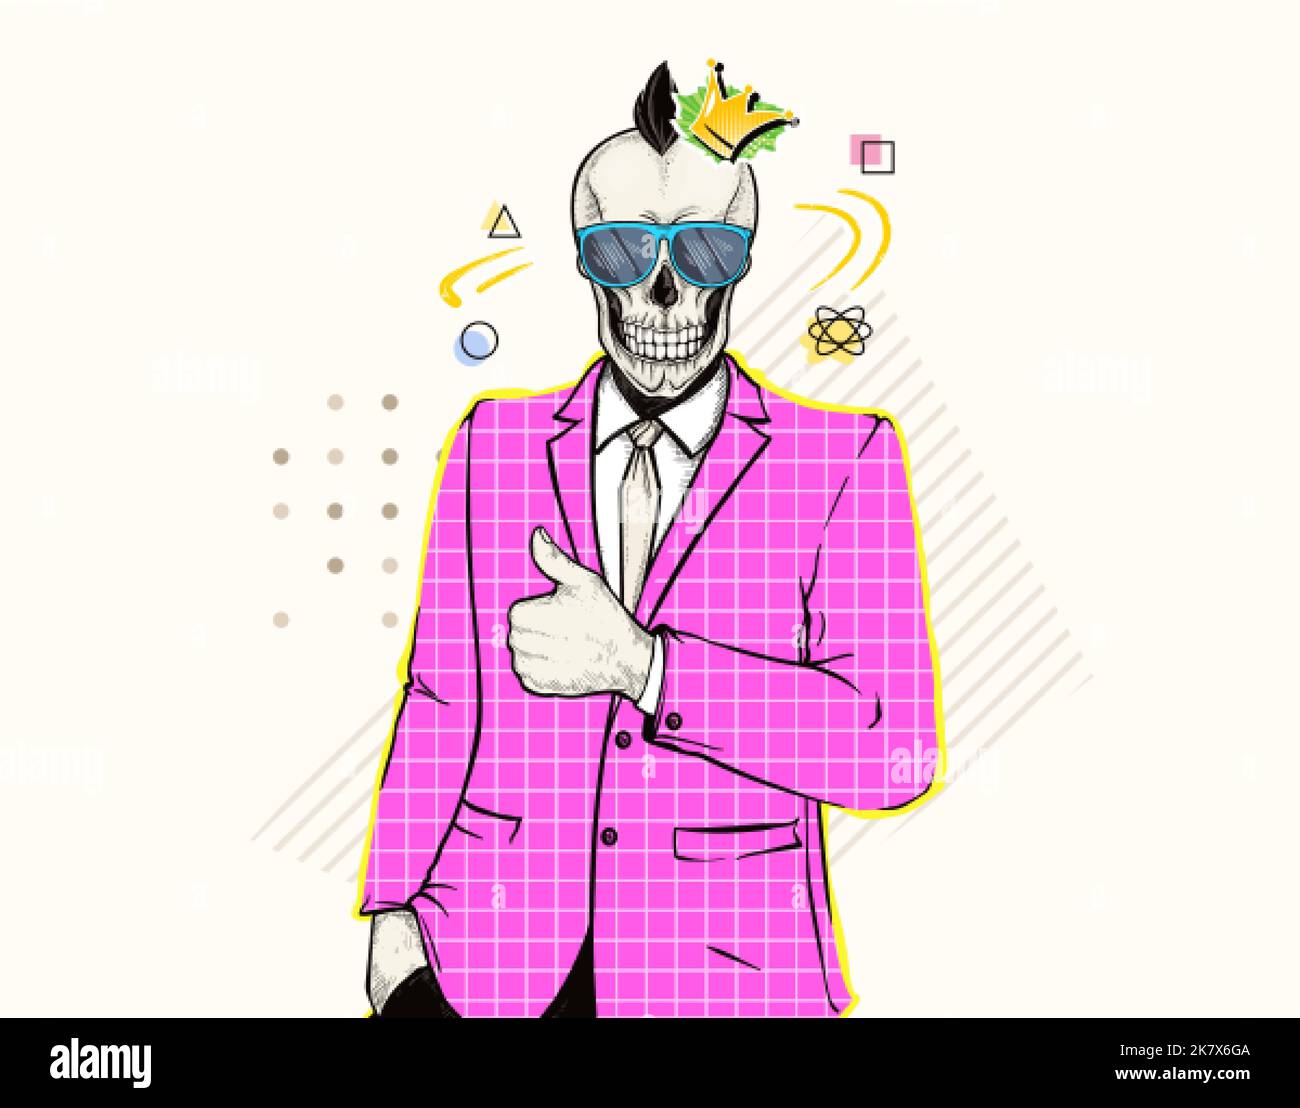 Uomo gotico sorridente con testa di cranio punk in occhiali da sole e simbolo della musica rock corona. Pop art da collage in stile zine contemporaneo, moderno stile rivista alla moda. Il bilanciere umano di affari in giacca rosa mostra i pollici in su. Illustrazione Vettoriale